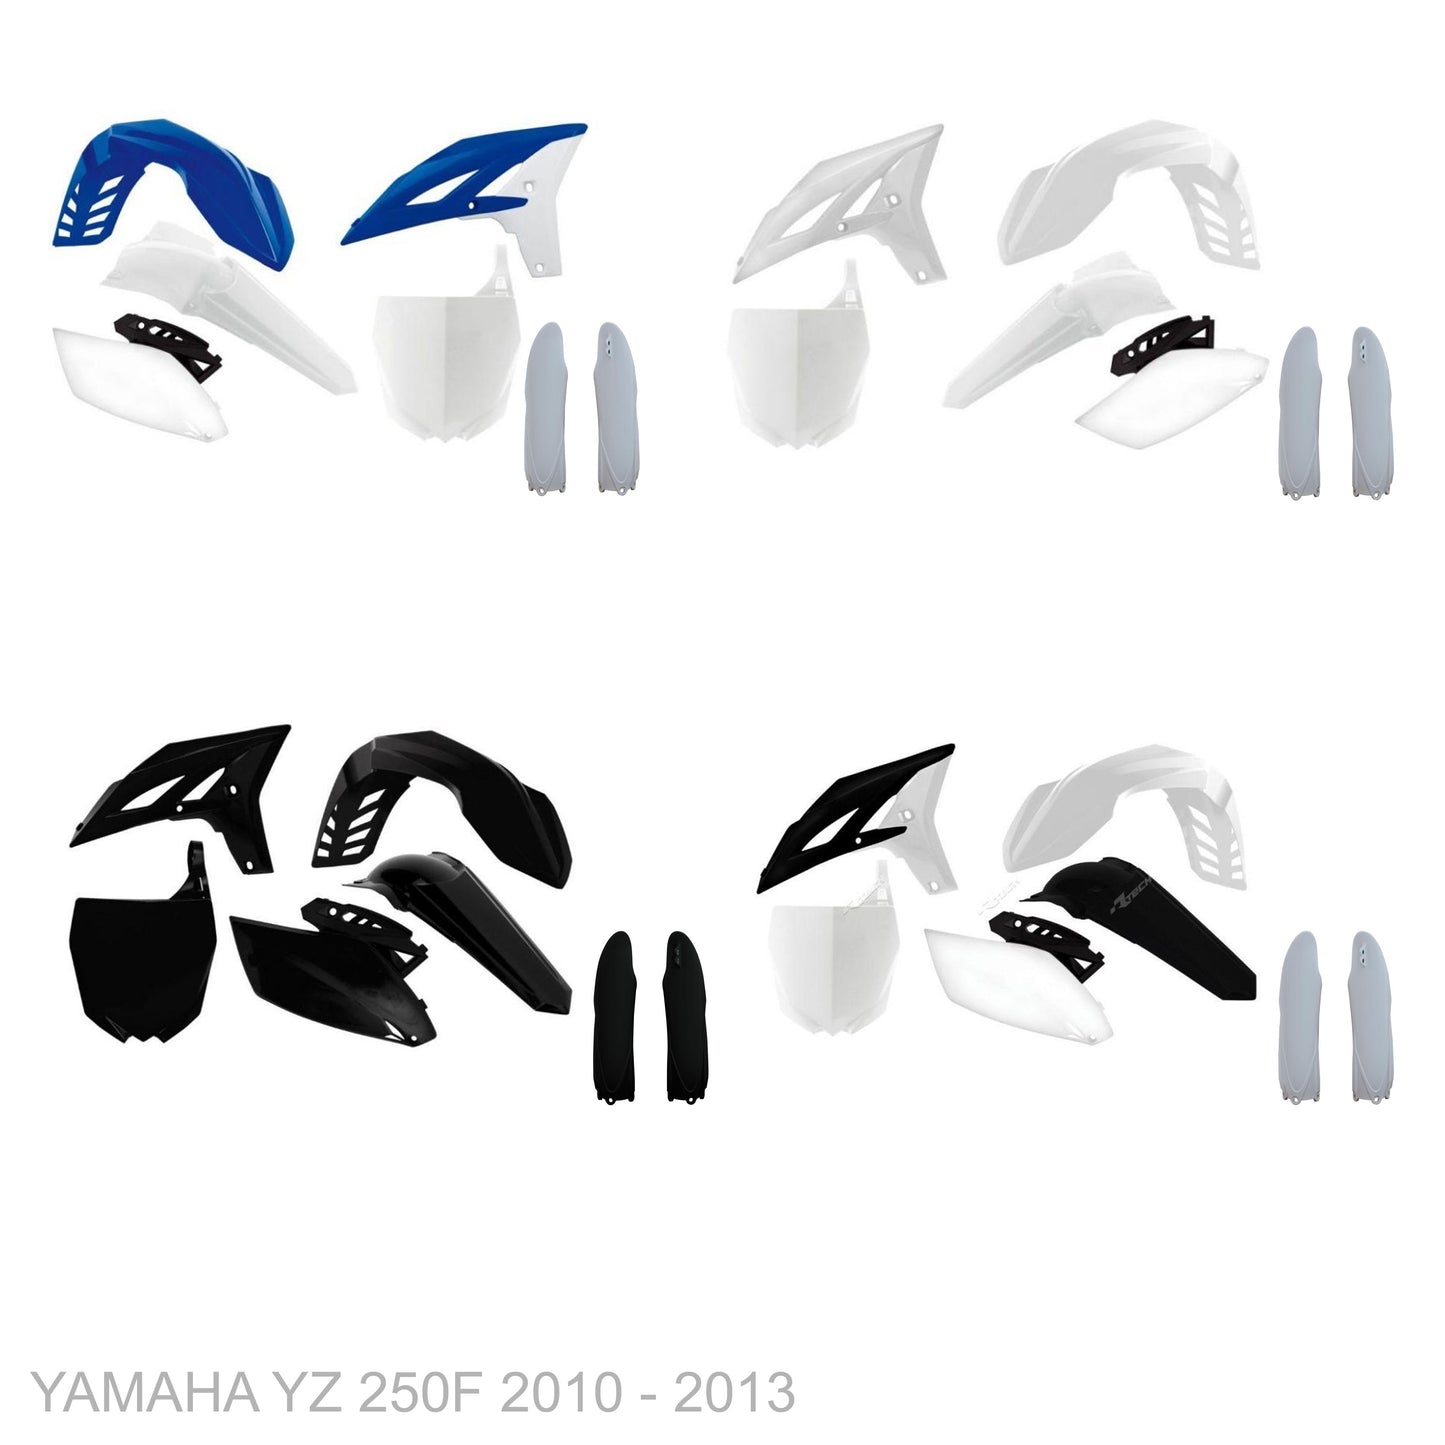 YAMAHA YZ 250F 2010 - 2013 VICE Graphics kit